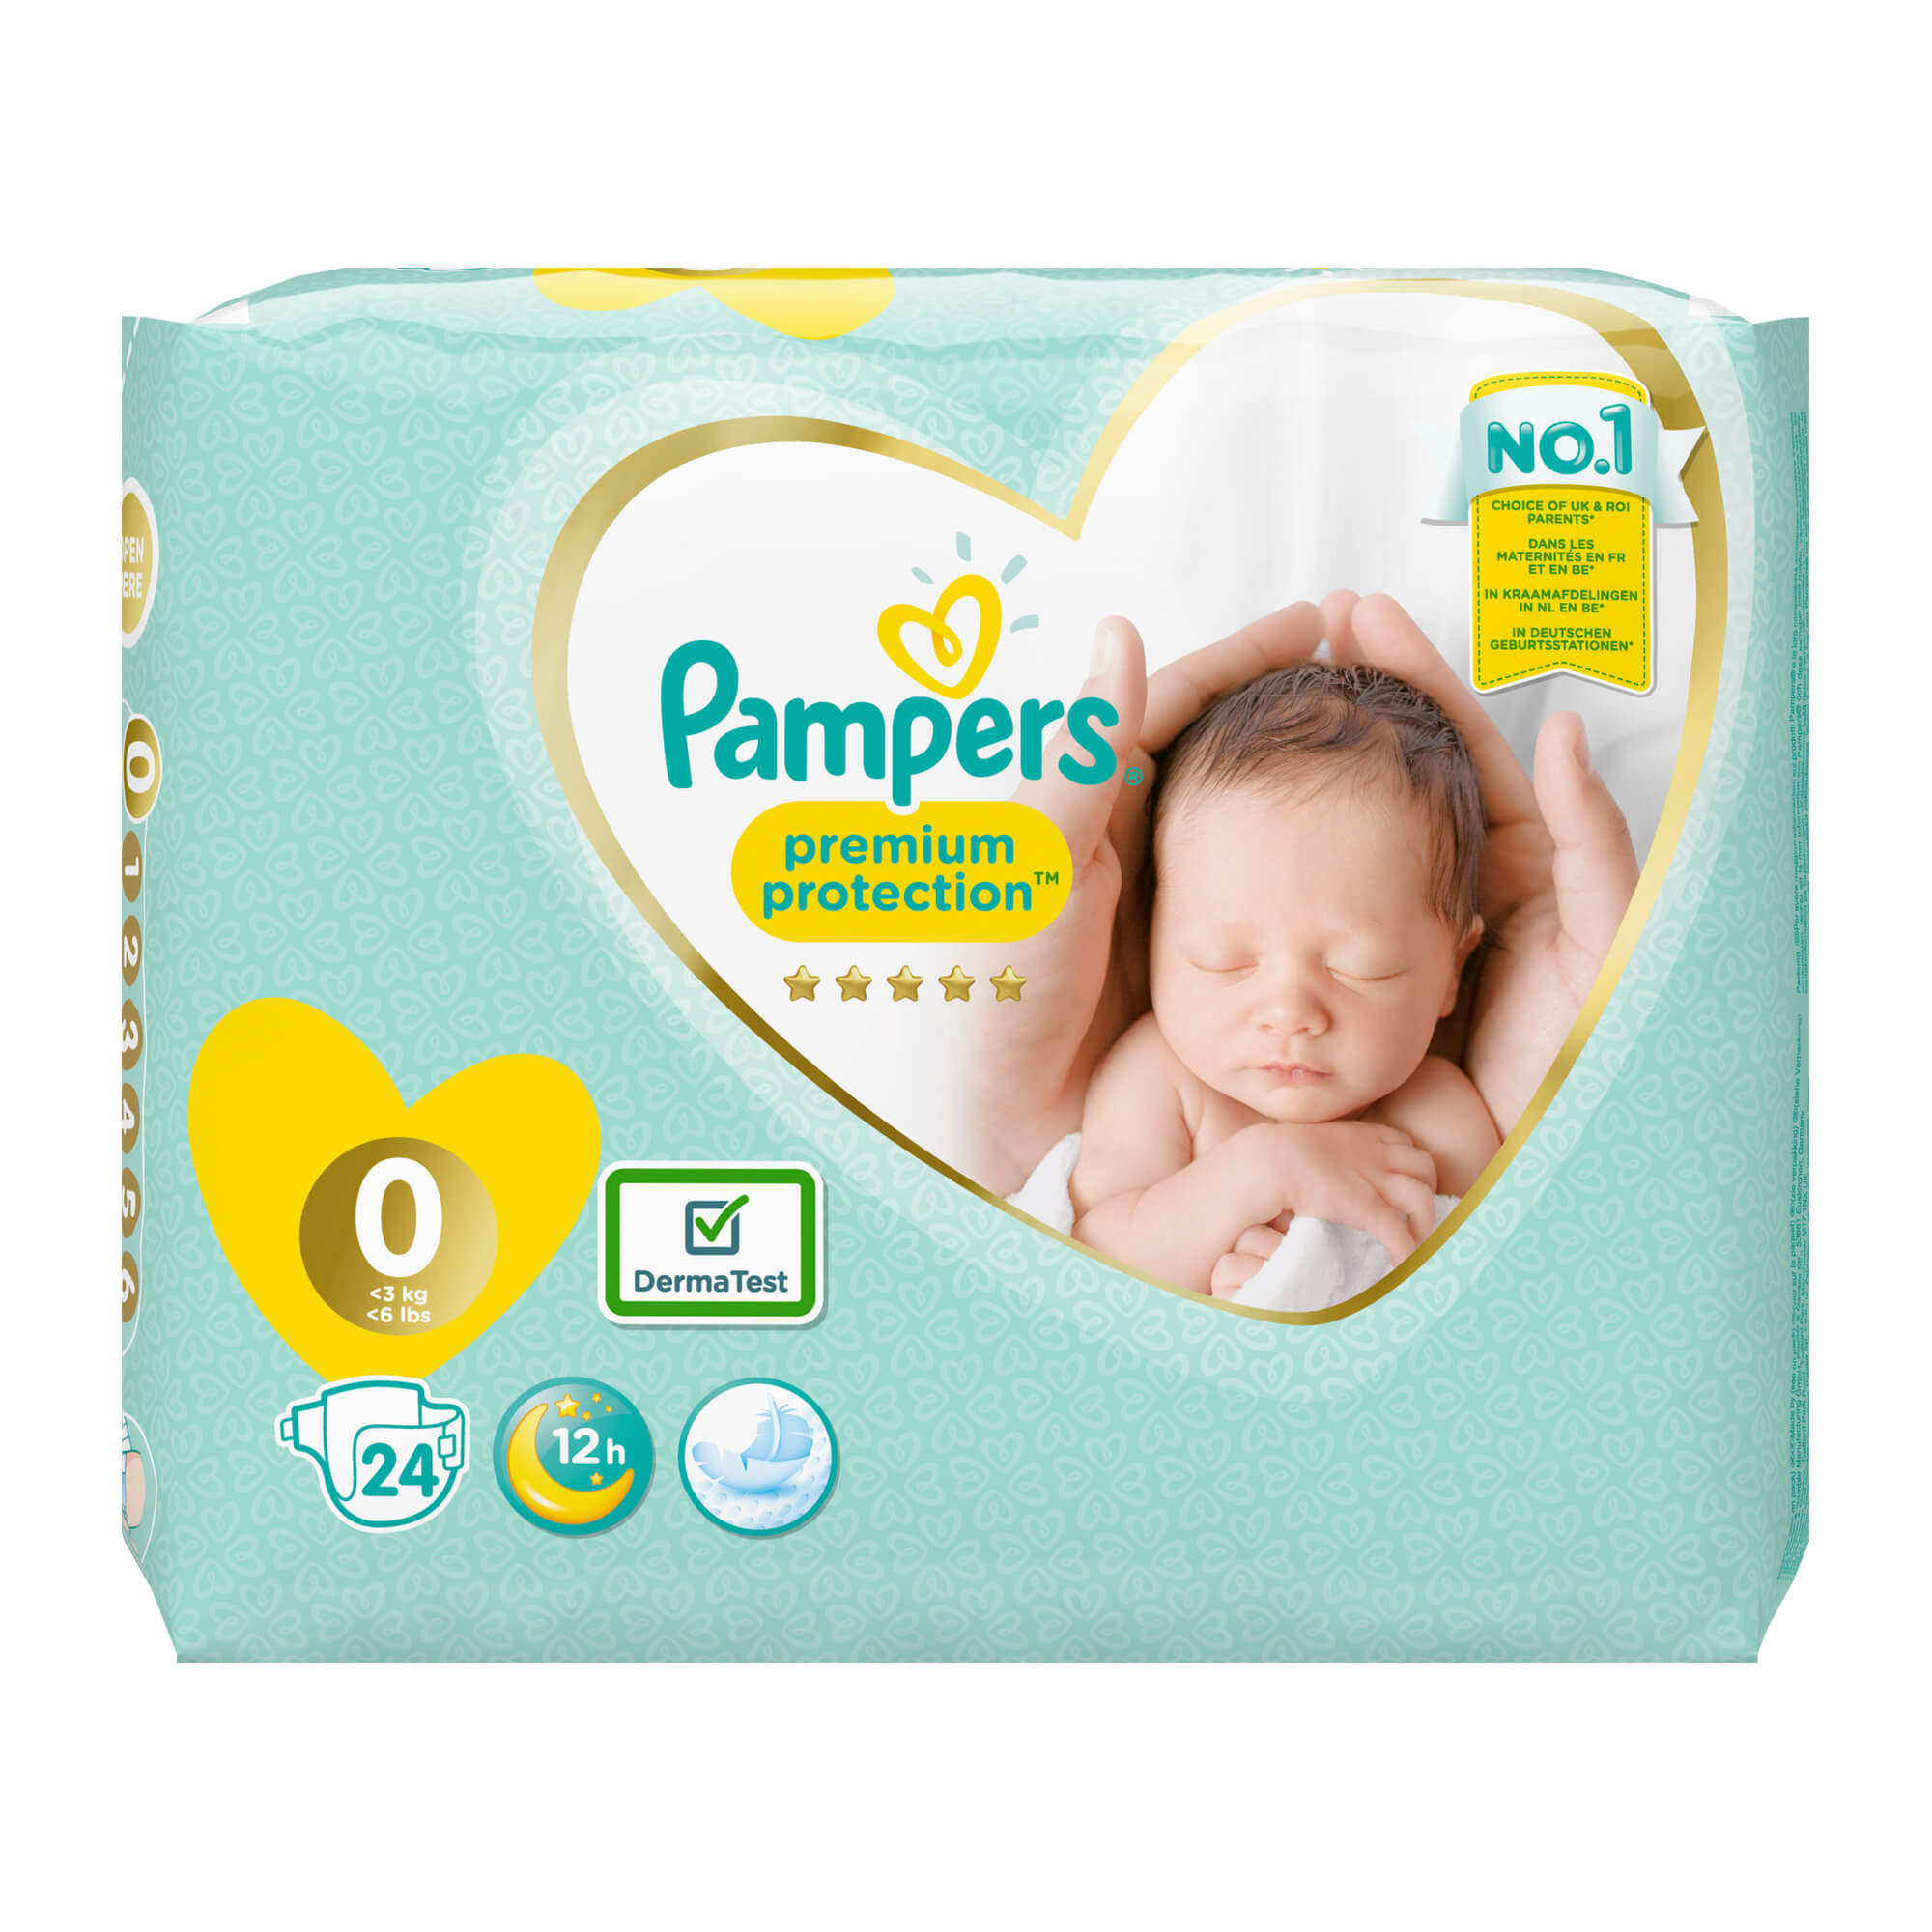 Pampers bester Komfort und Schutz für Babys Haut.